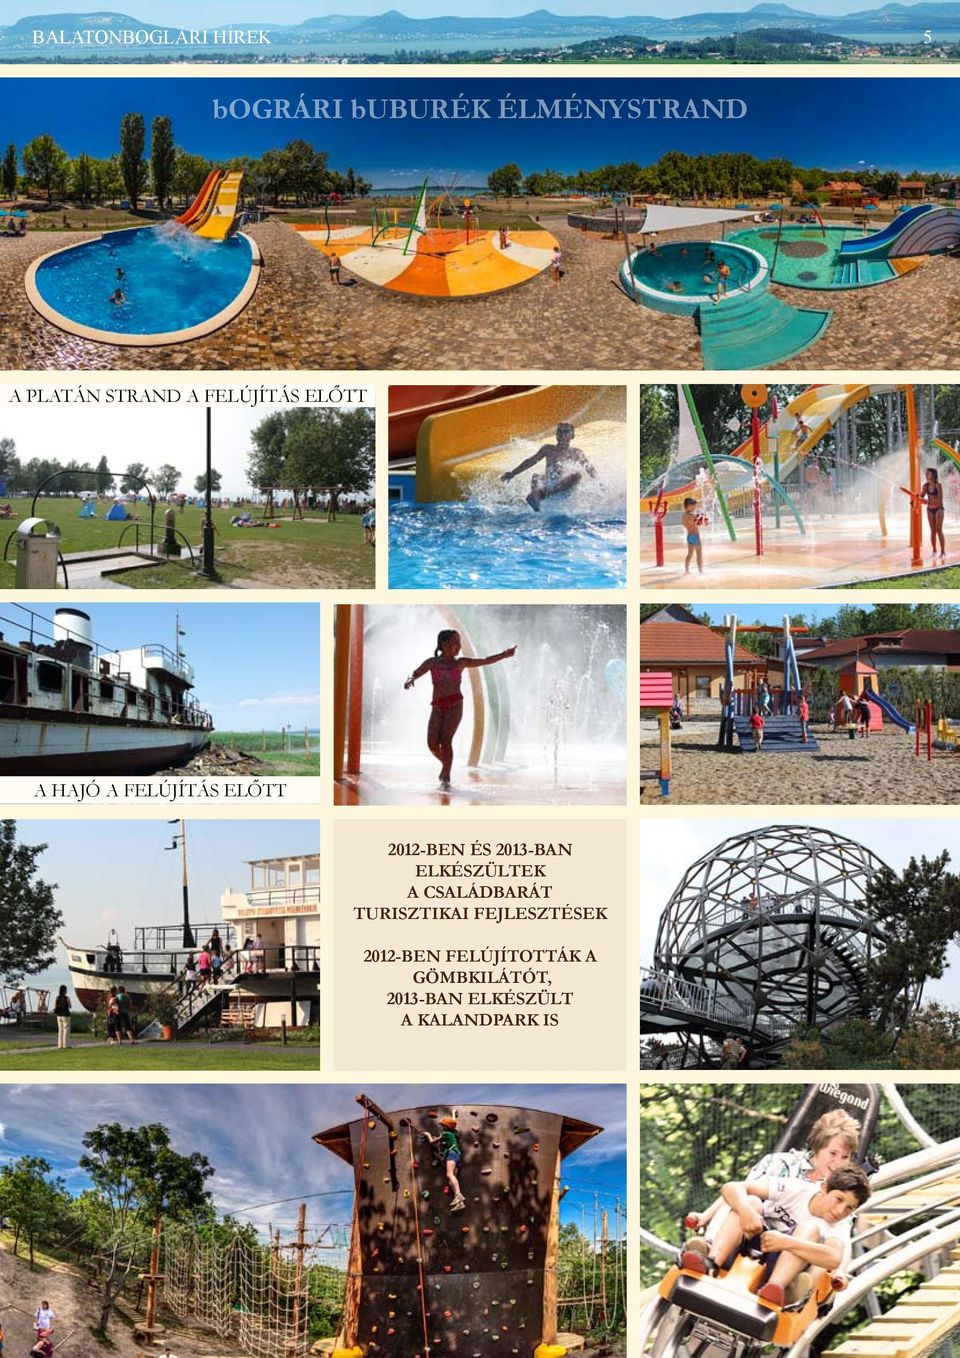 2013-ban elkészültek a családbarát turisztikai fejlesztések